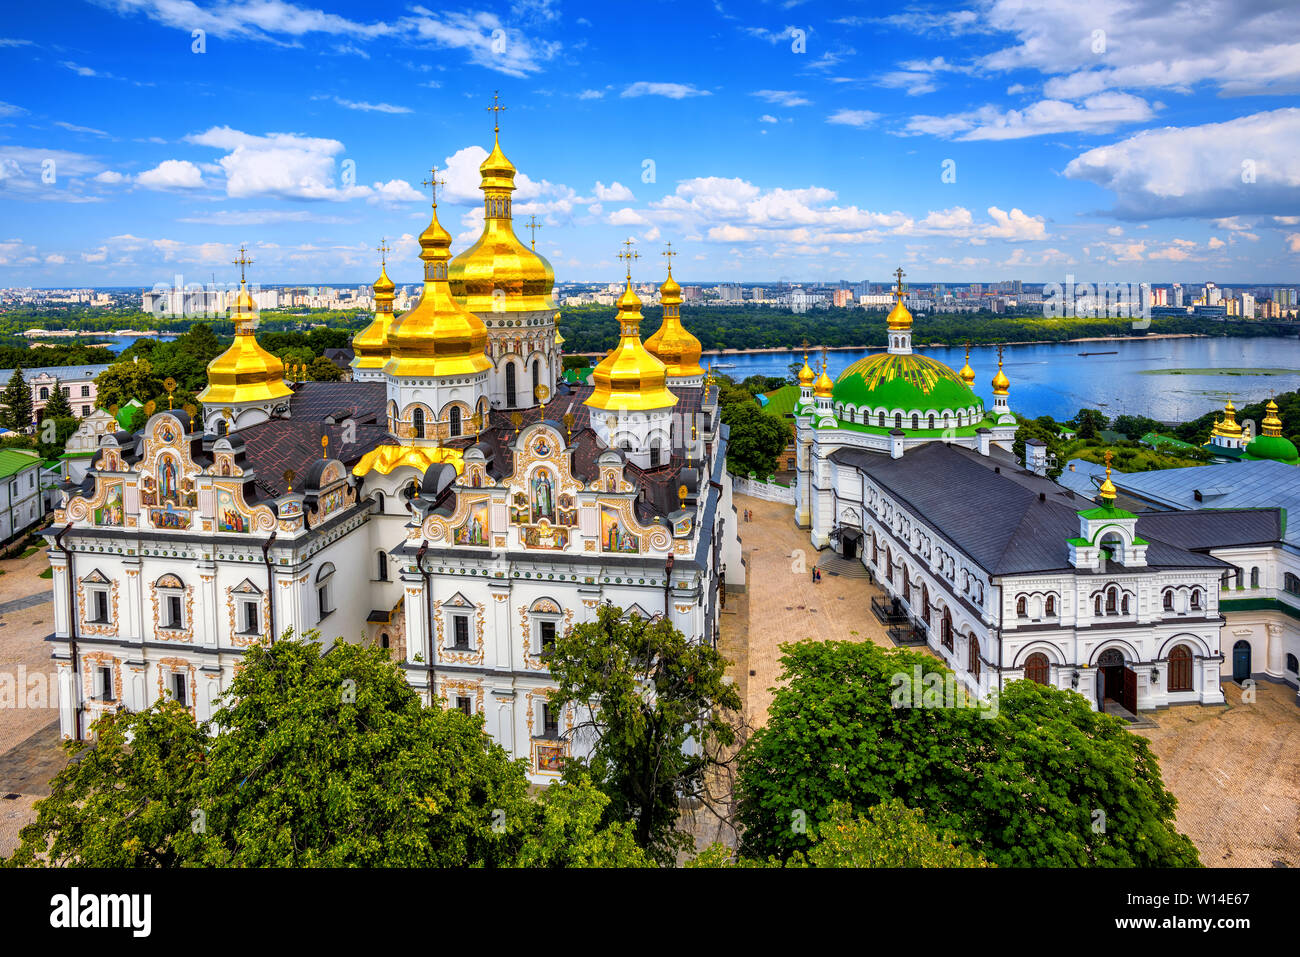 Kiew, Ukraine, goldenen Kuppeln der christlich-orthodoxen Kathedrale in Kiew 1352 Kloster der Höhlen oder Kiew Pechersk Lavra am Fluss Dniepr Stockfoto